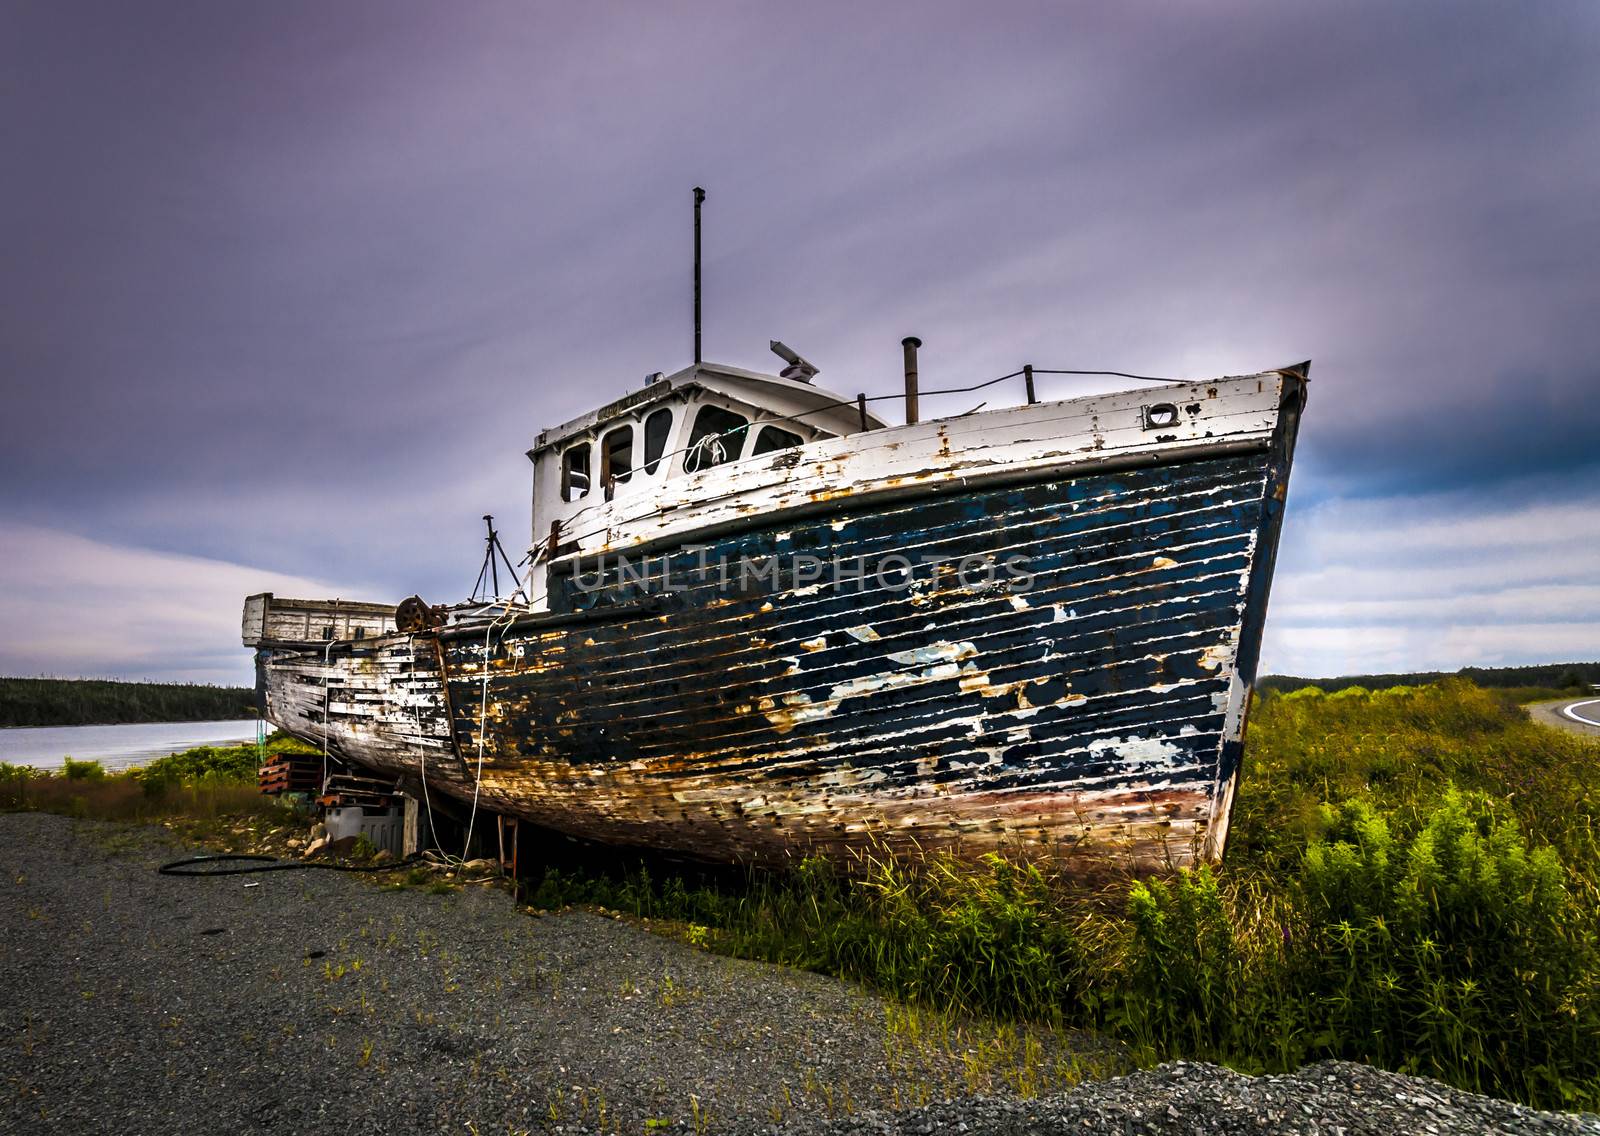 Rusty boat by vladikpod